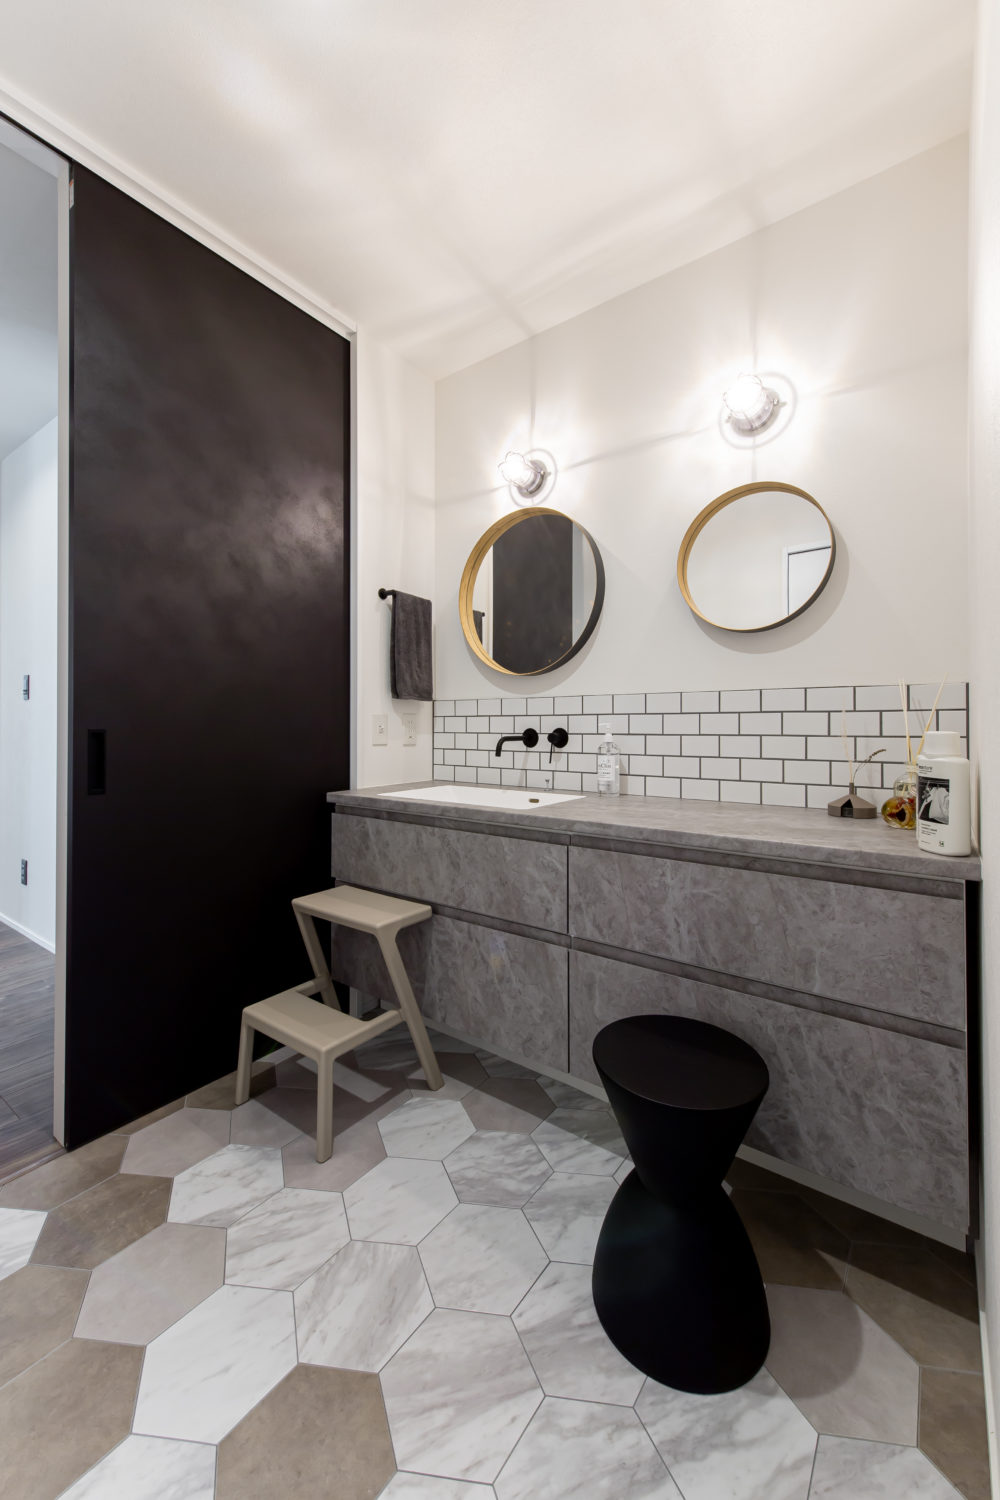 アイデザインホーム
注文住宅
大阪府
ヘキサゴン型のフロアタイルを採用したグレーイッシュカラーでコーディネートした洗面室